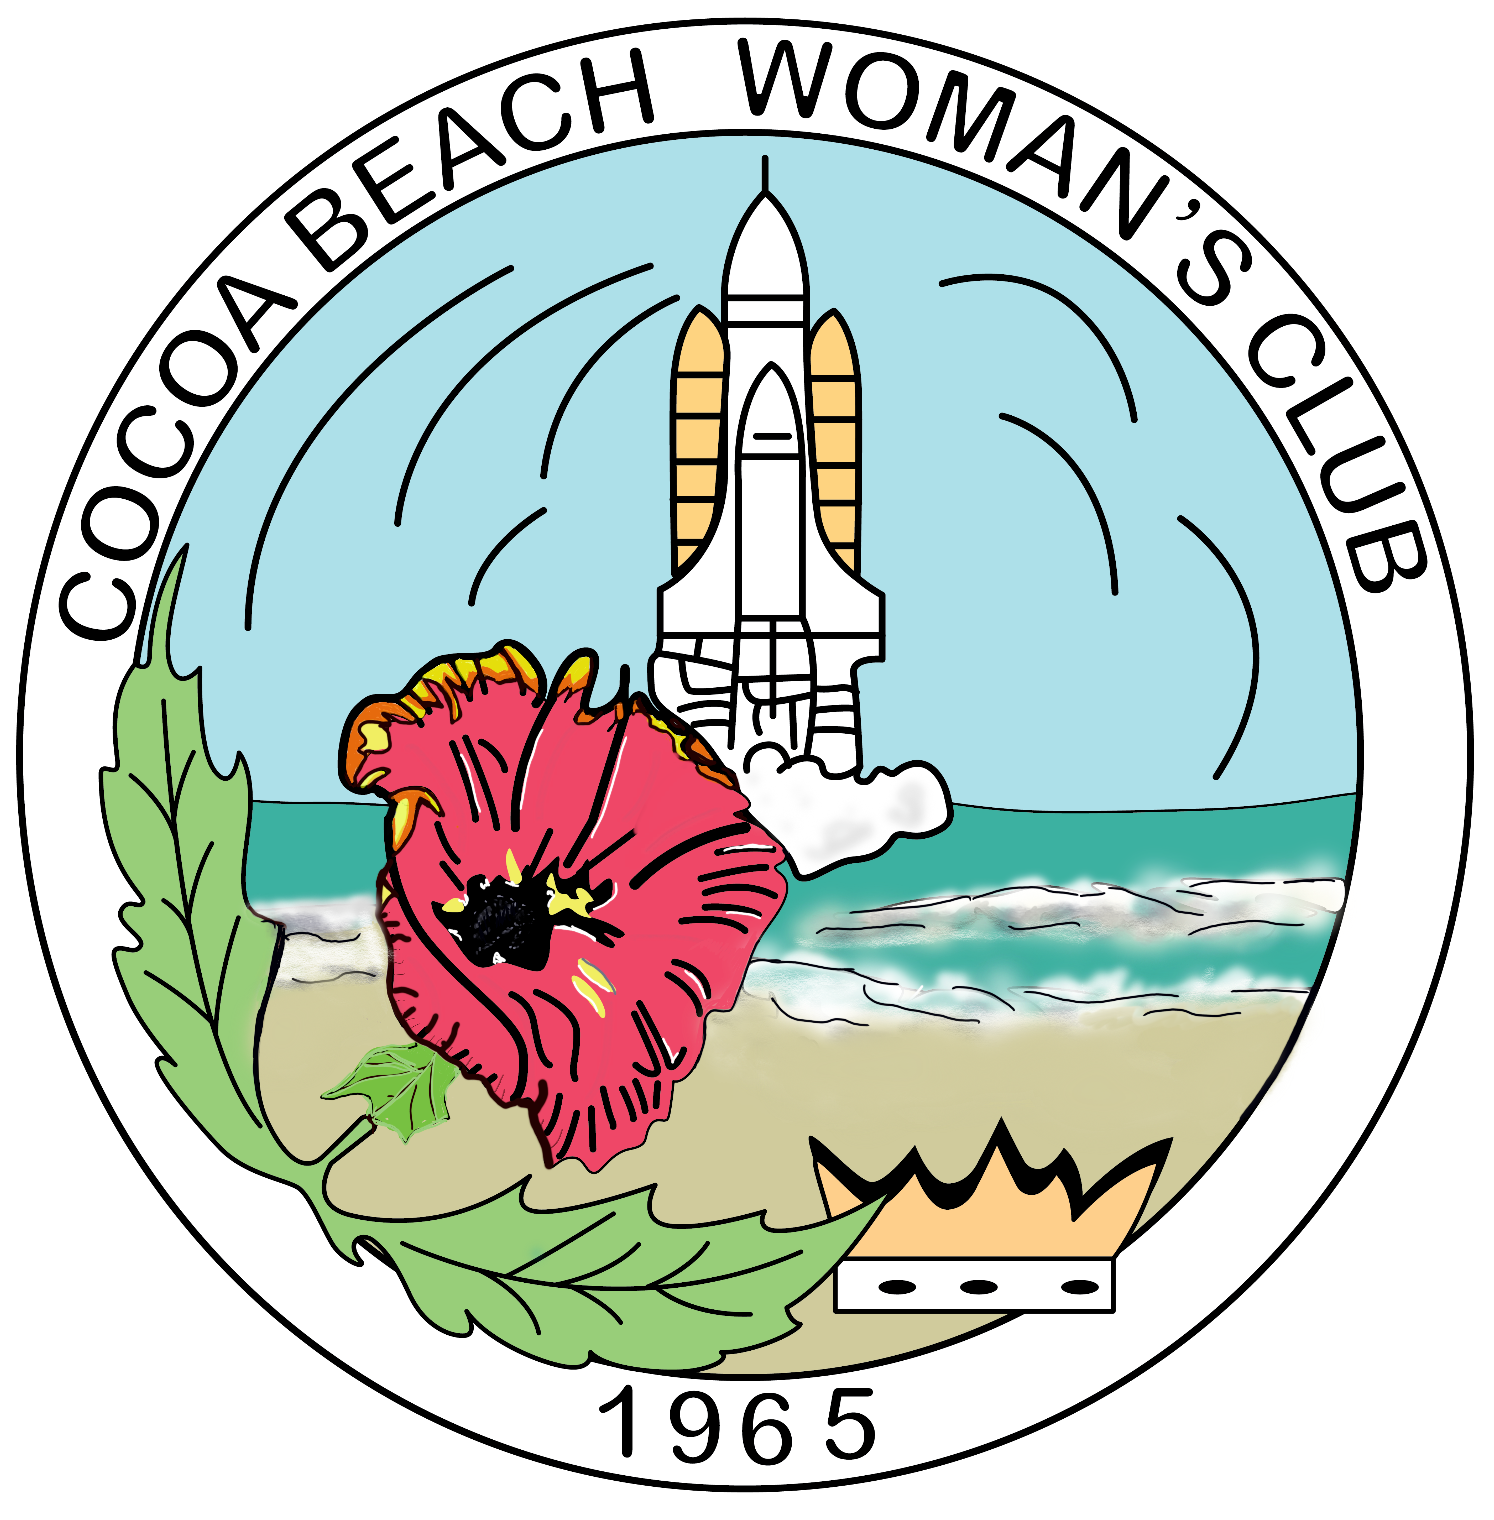 Cocoa Beach Woman's Club